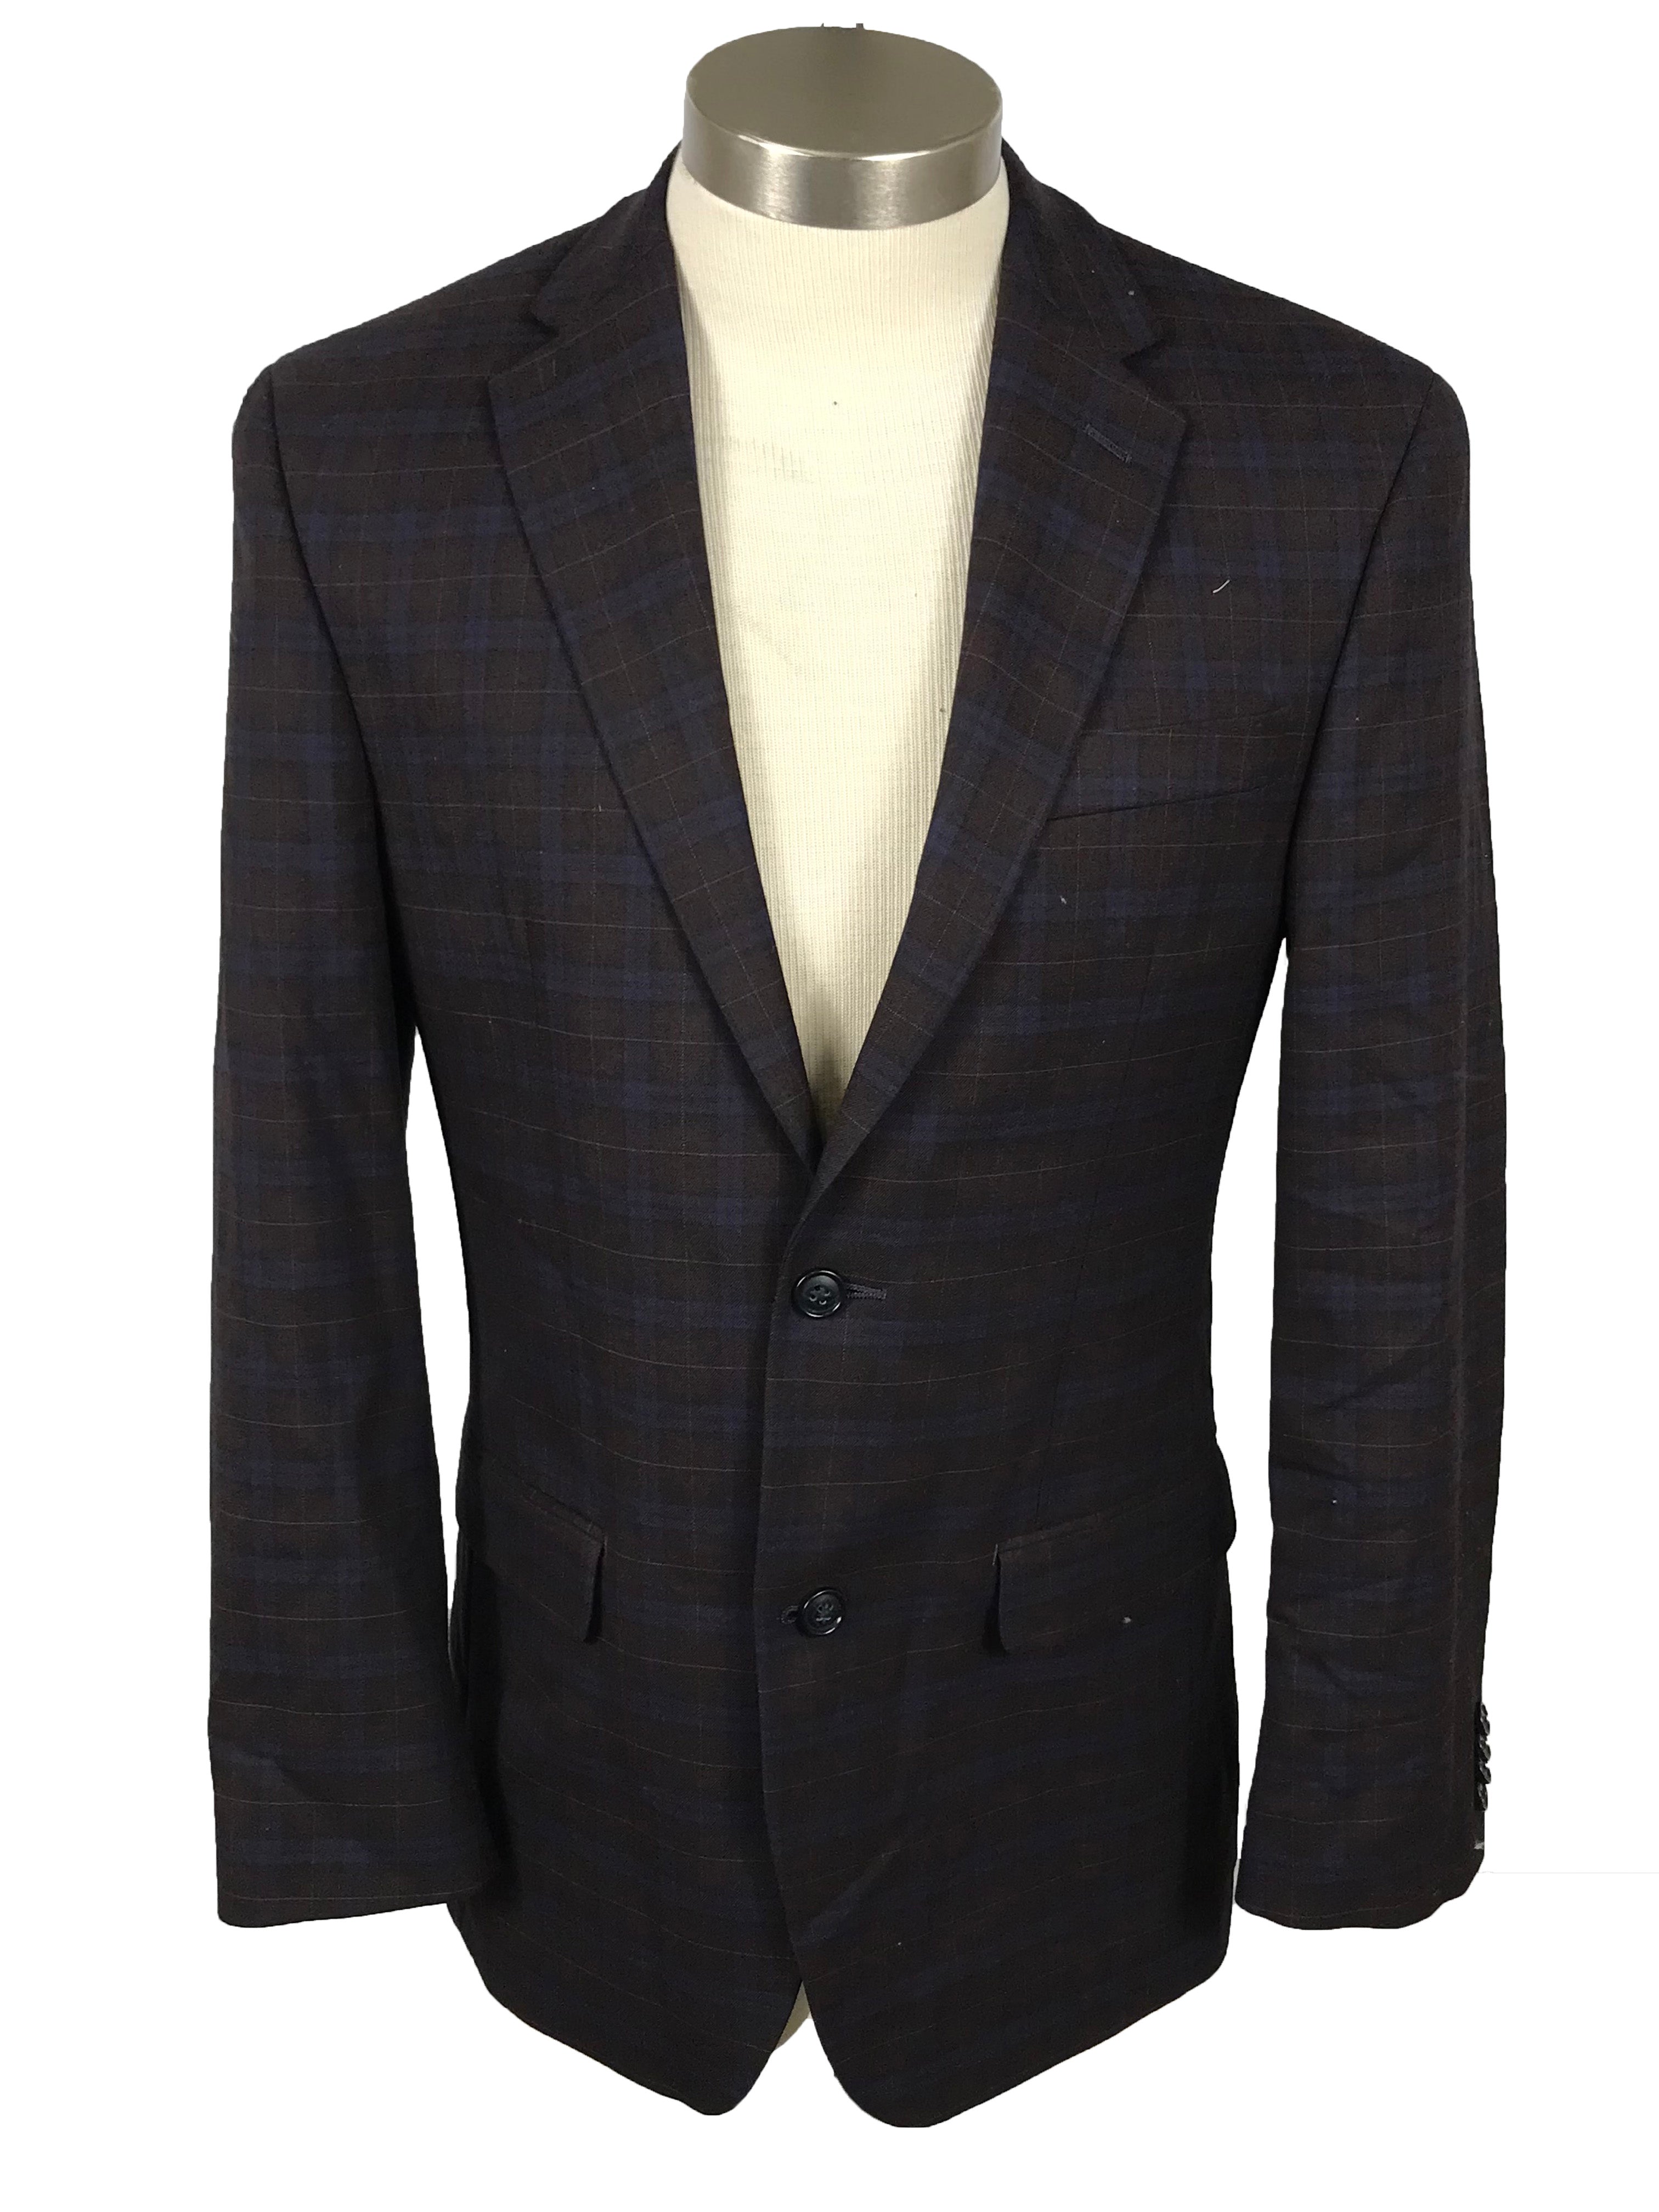 Sean John Brown and Purple Plaid Suit Jacket Men's Size 36R